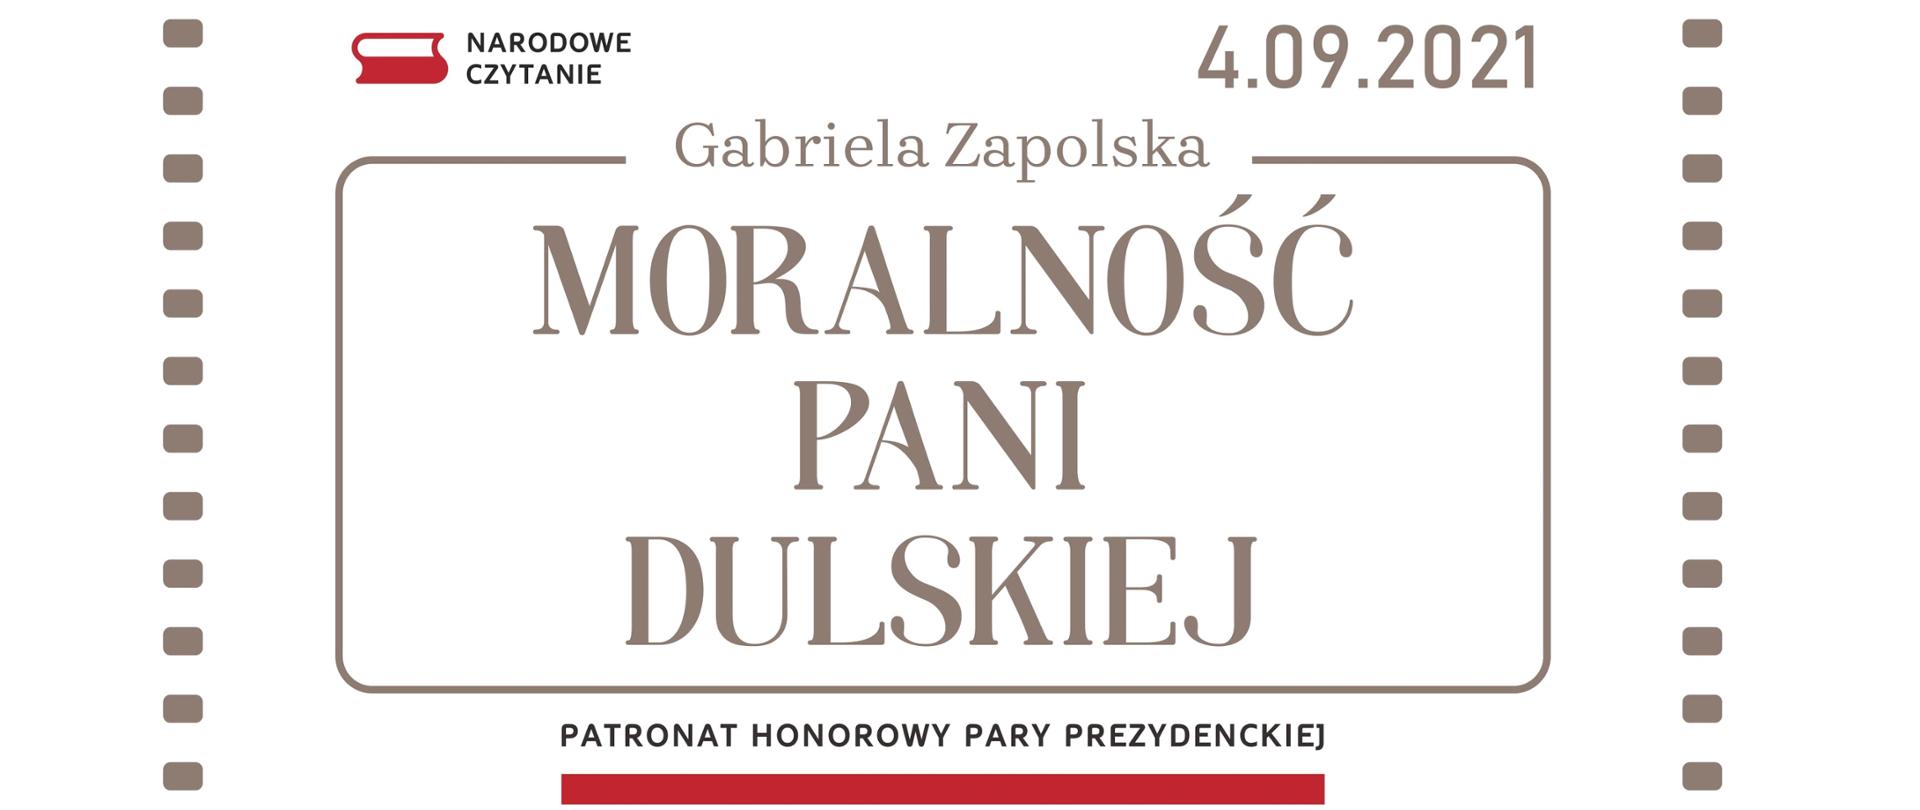 Gabriela Zapolska - Moralność Pani Dulskiej. Patronat honorowy Pary Prezydenckiej